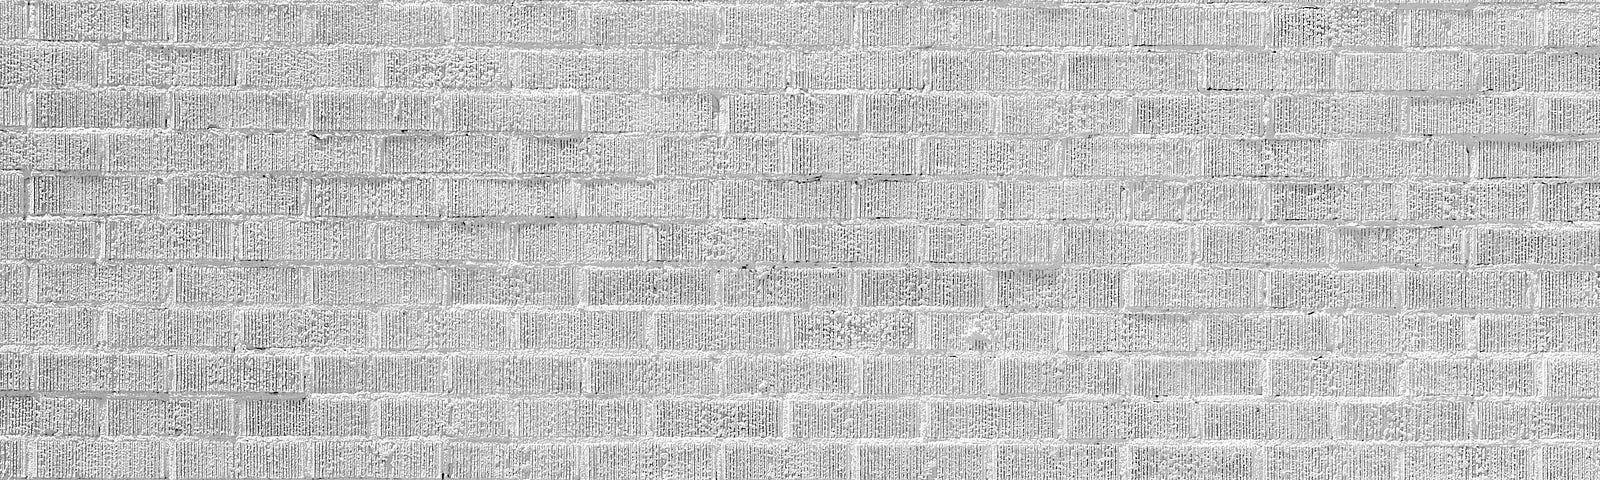 White bricks